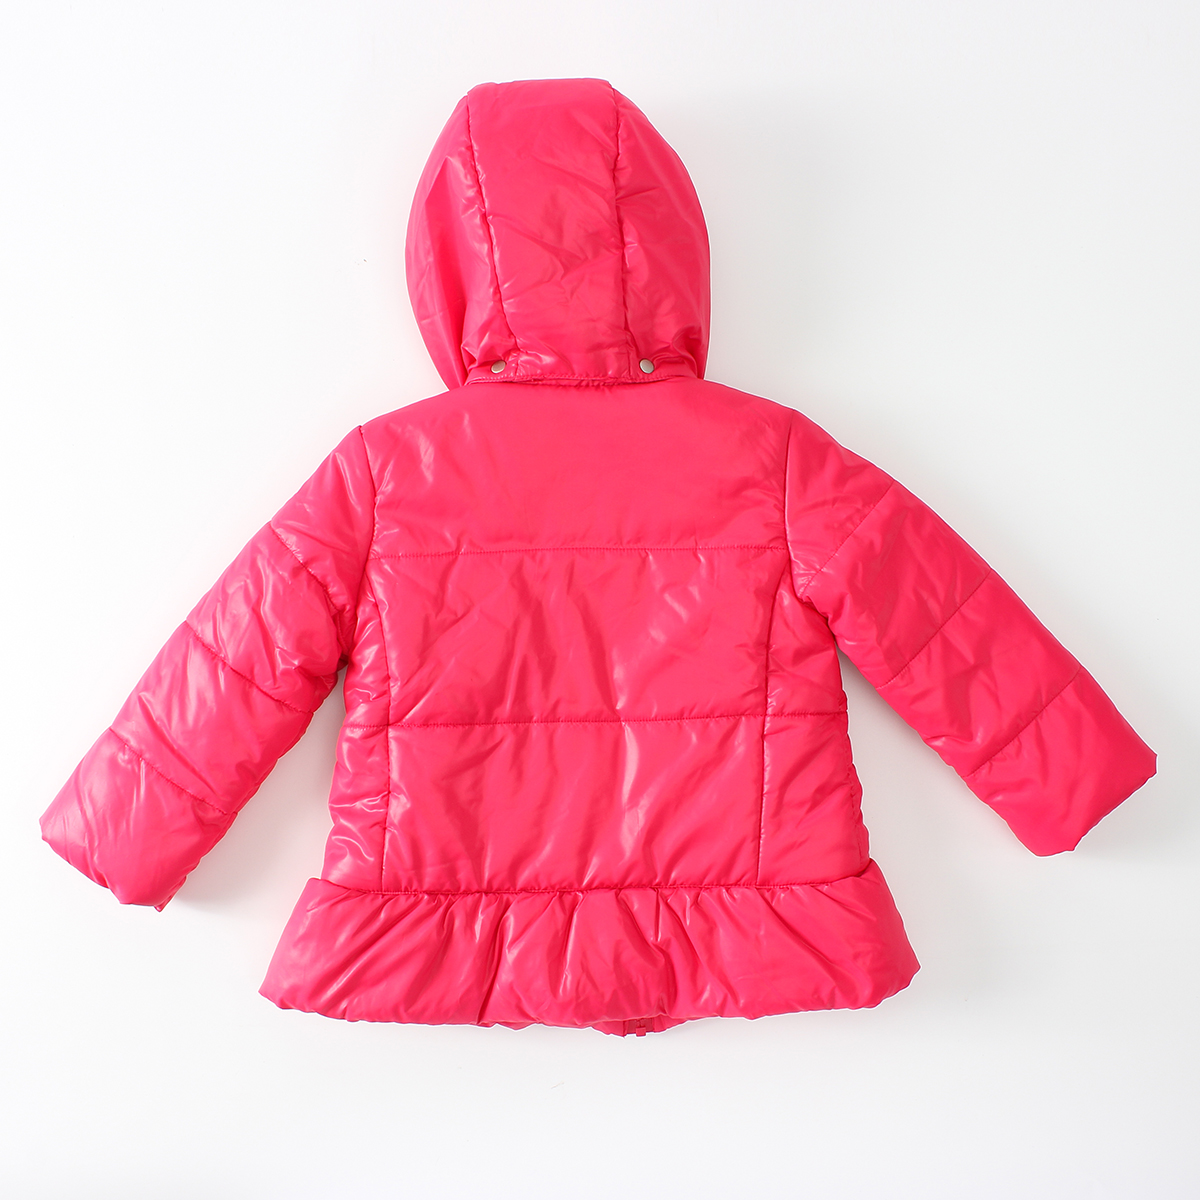 AV5992 OEM &ODM Red Cute Baby Jackets&Outwear